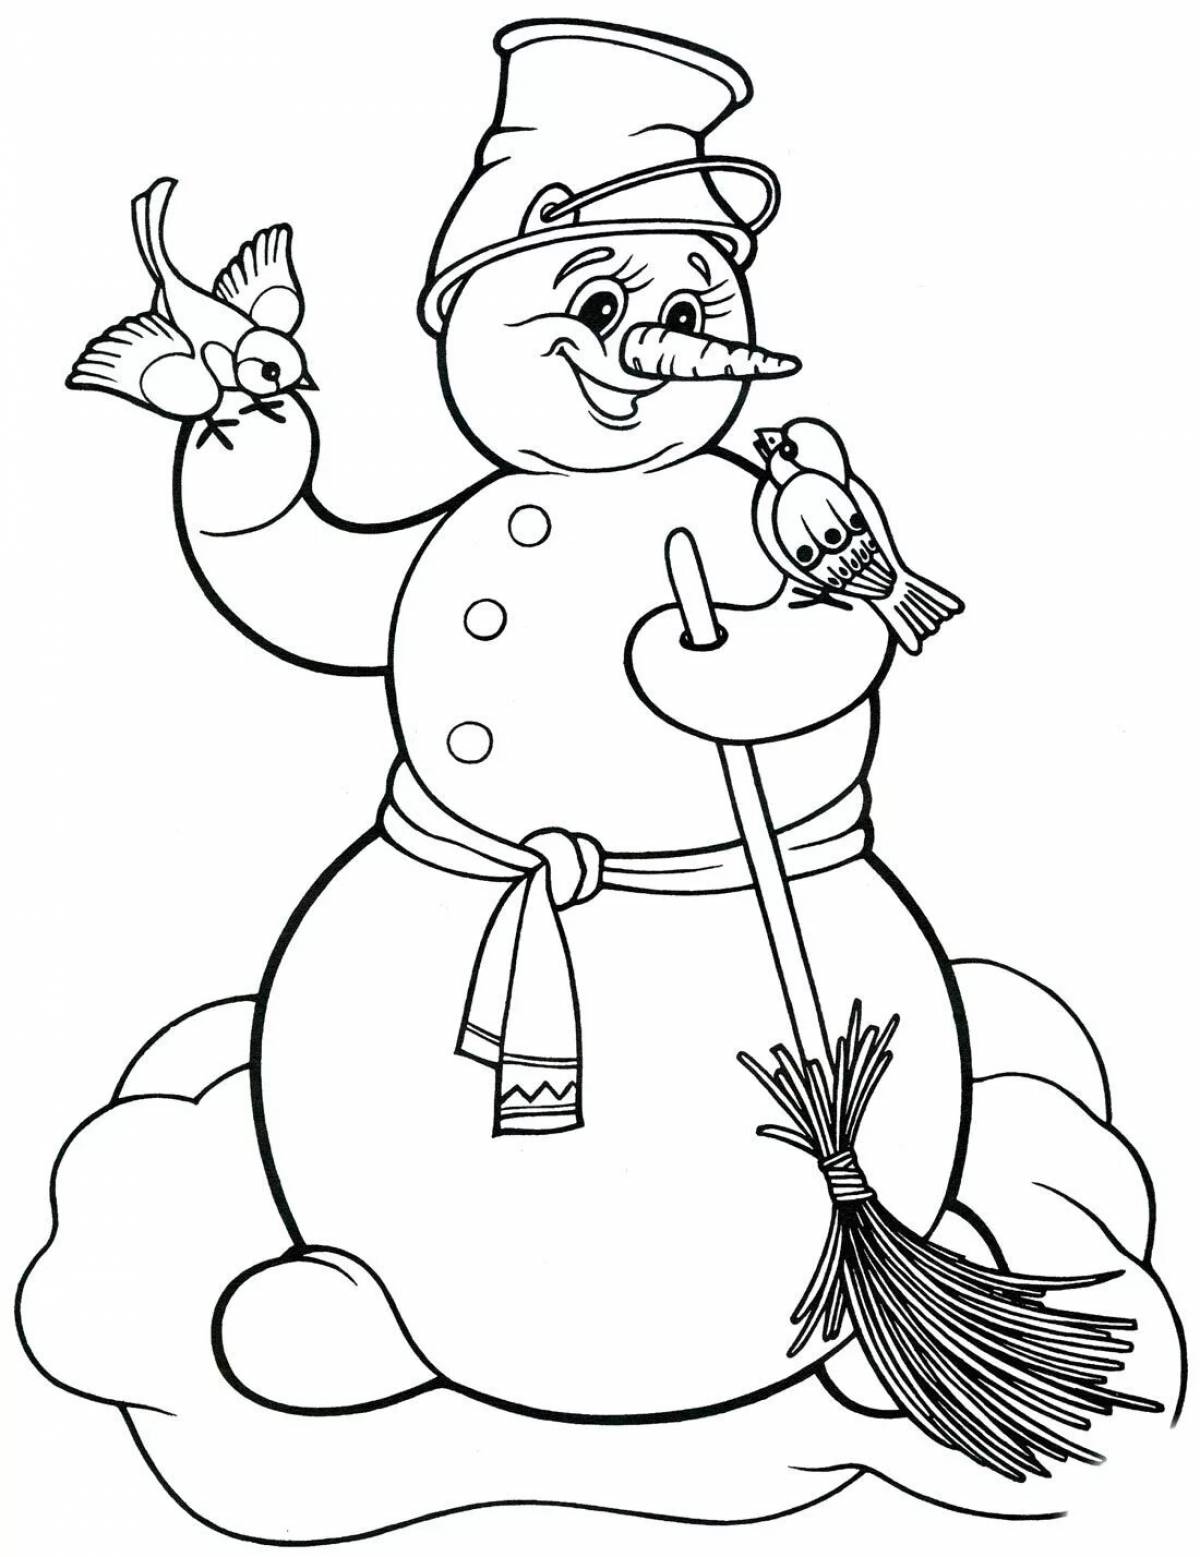 Children's snowman #3